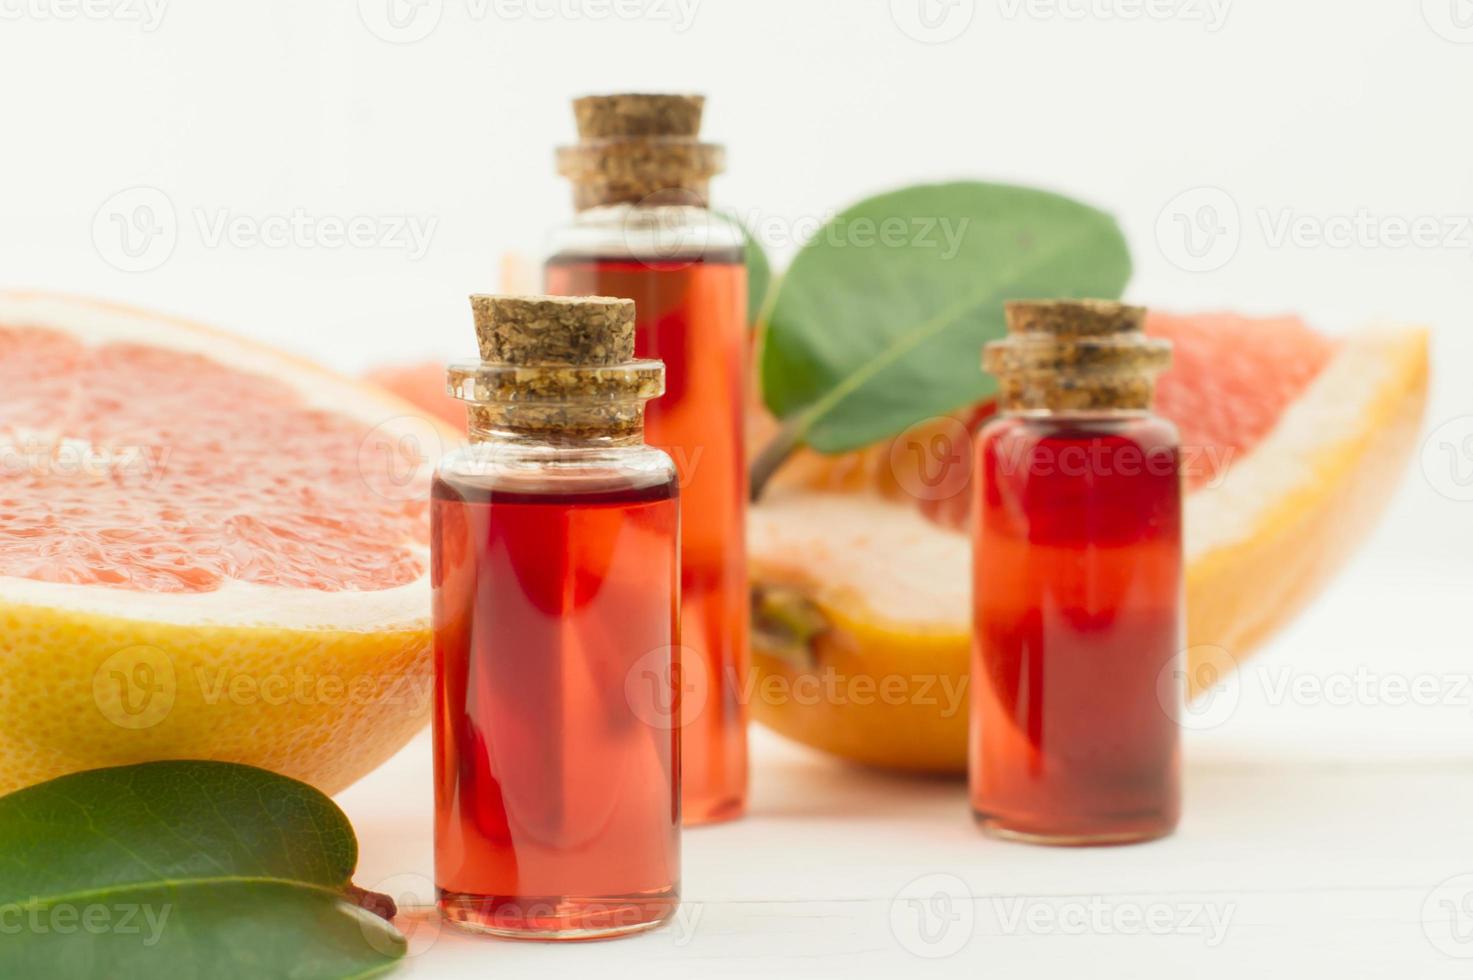 aceite esencial de pomelo aromático en tres botellas con tapa de corcho. frutos maduros y hojas. Fondo blanco. foto